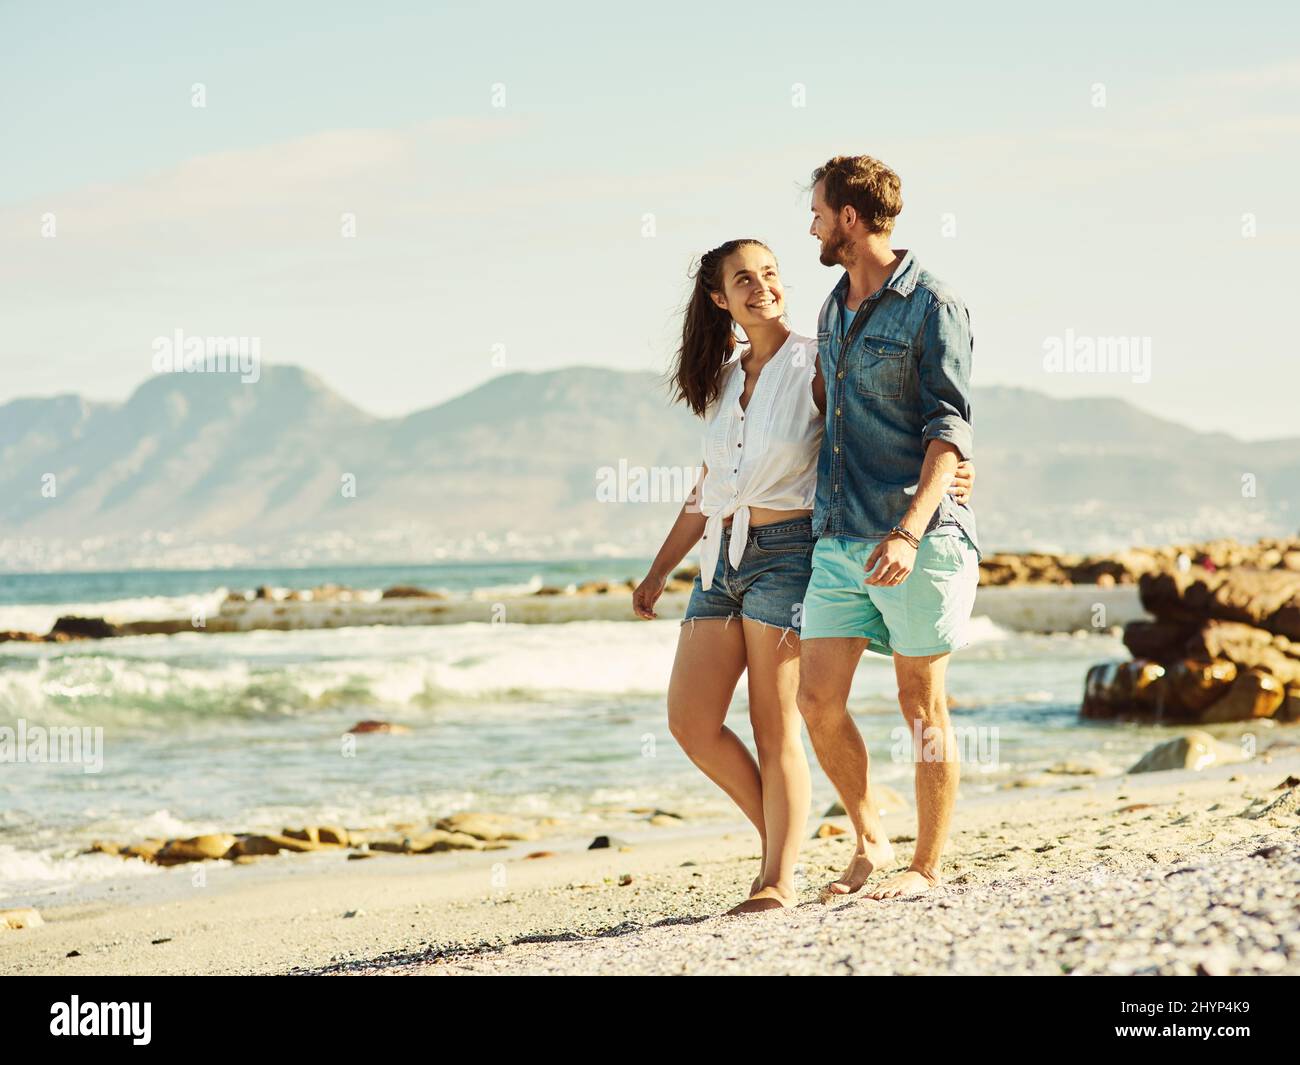 Nous partageons un amour profond pour la plage. Photo d'un jeune couple marié marchant sur la plage. Banque D'Images